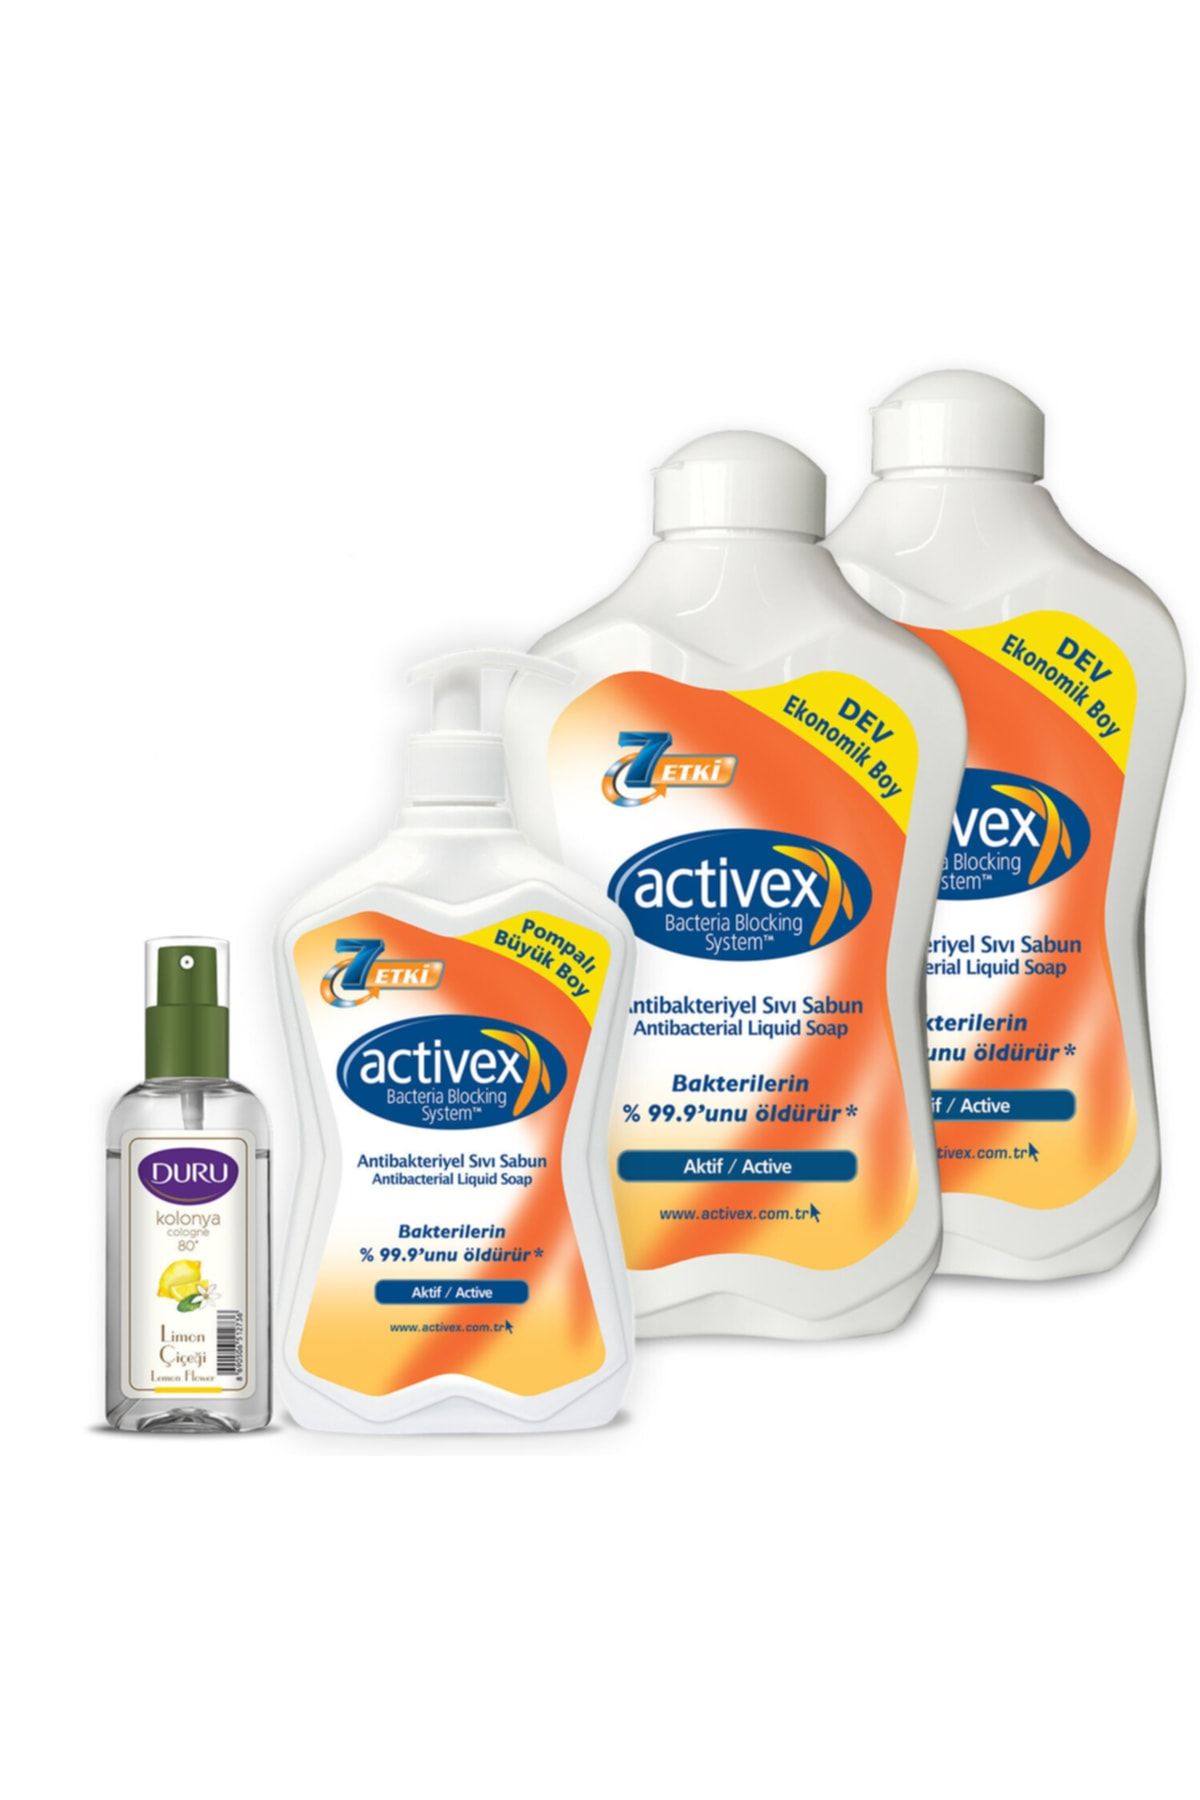 Activex Antibakteriyel Sıvı Sabun Aktif 1,5 1,5 700ml 50 ml Duru Kolonya Ile Birlikte